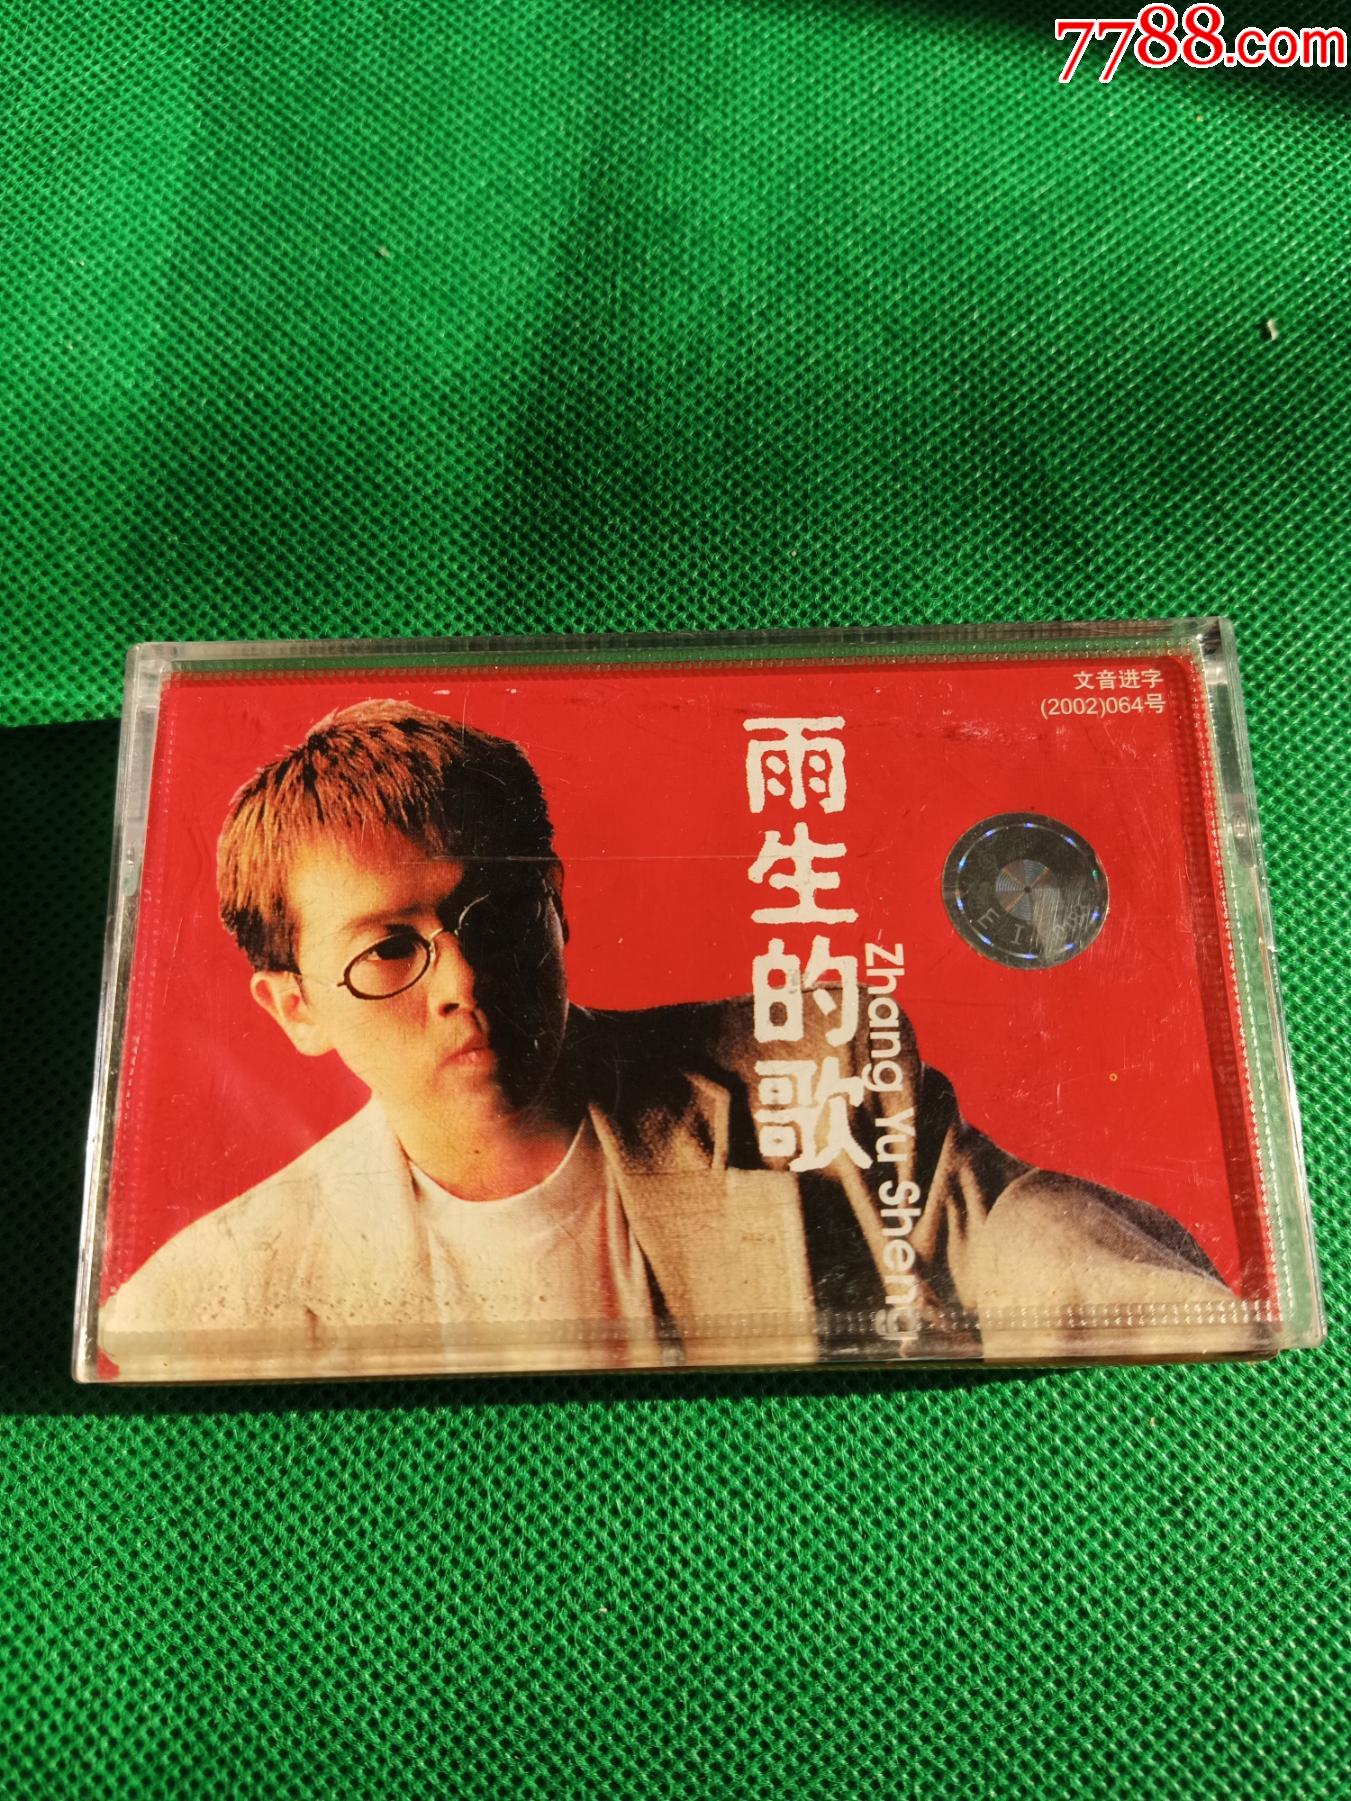 张雨生雨生的歌磁带丰华供版上海音像公司出版